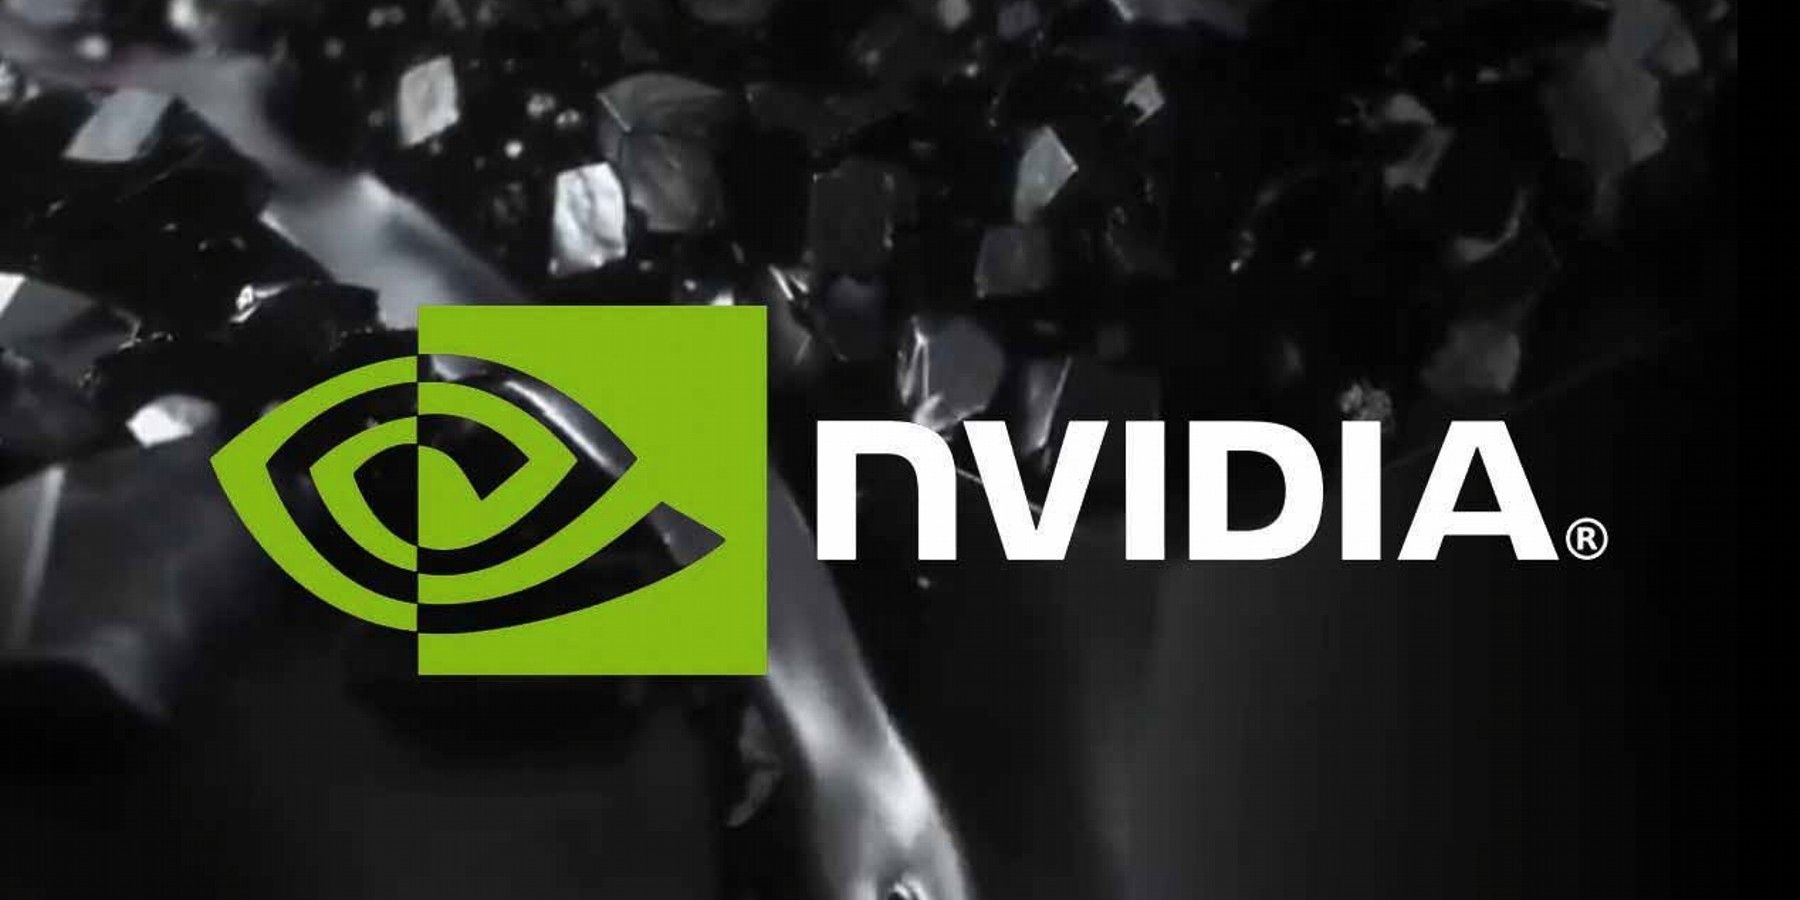 Группа программ-вымогателей, утверждающая, что взломала Nvidia, подверглась контратаке